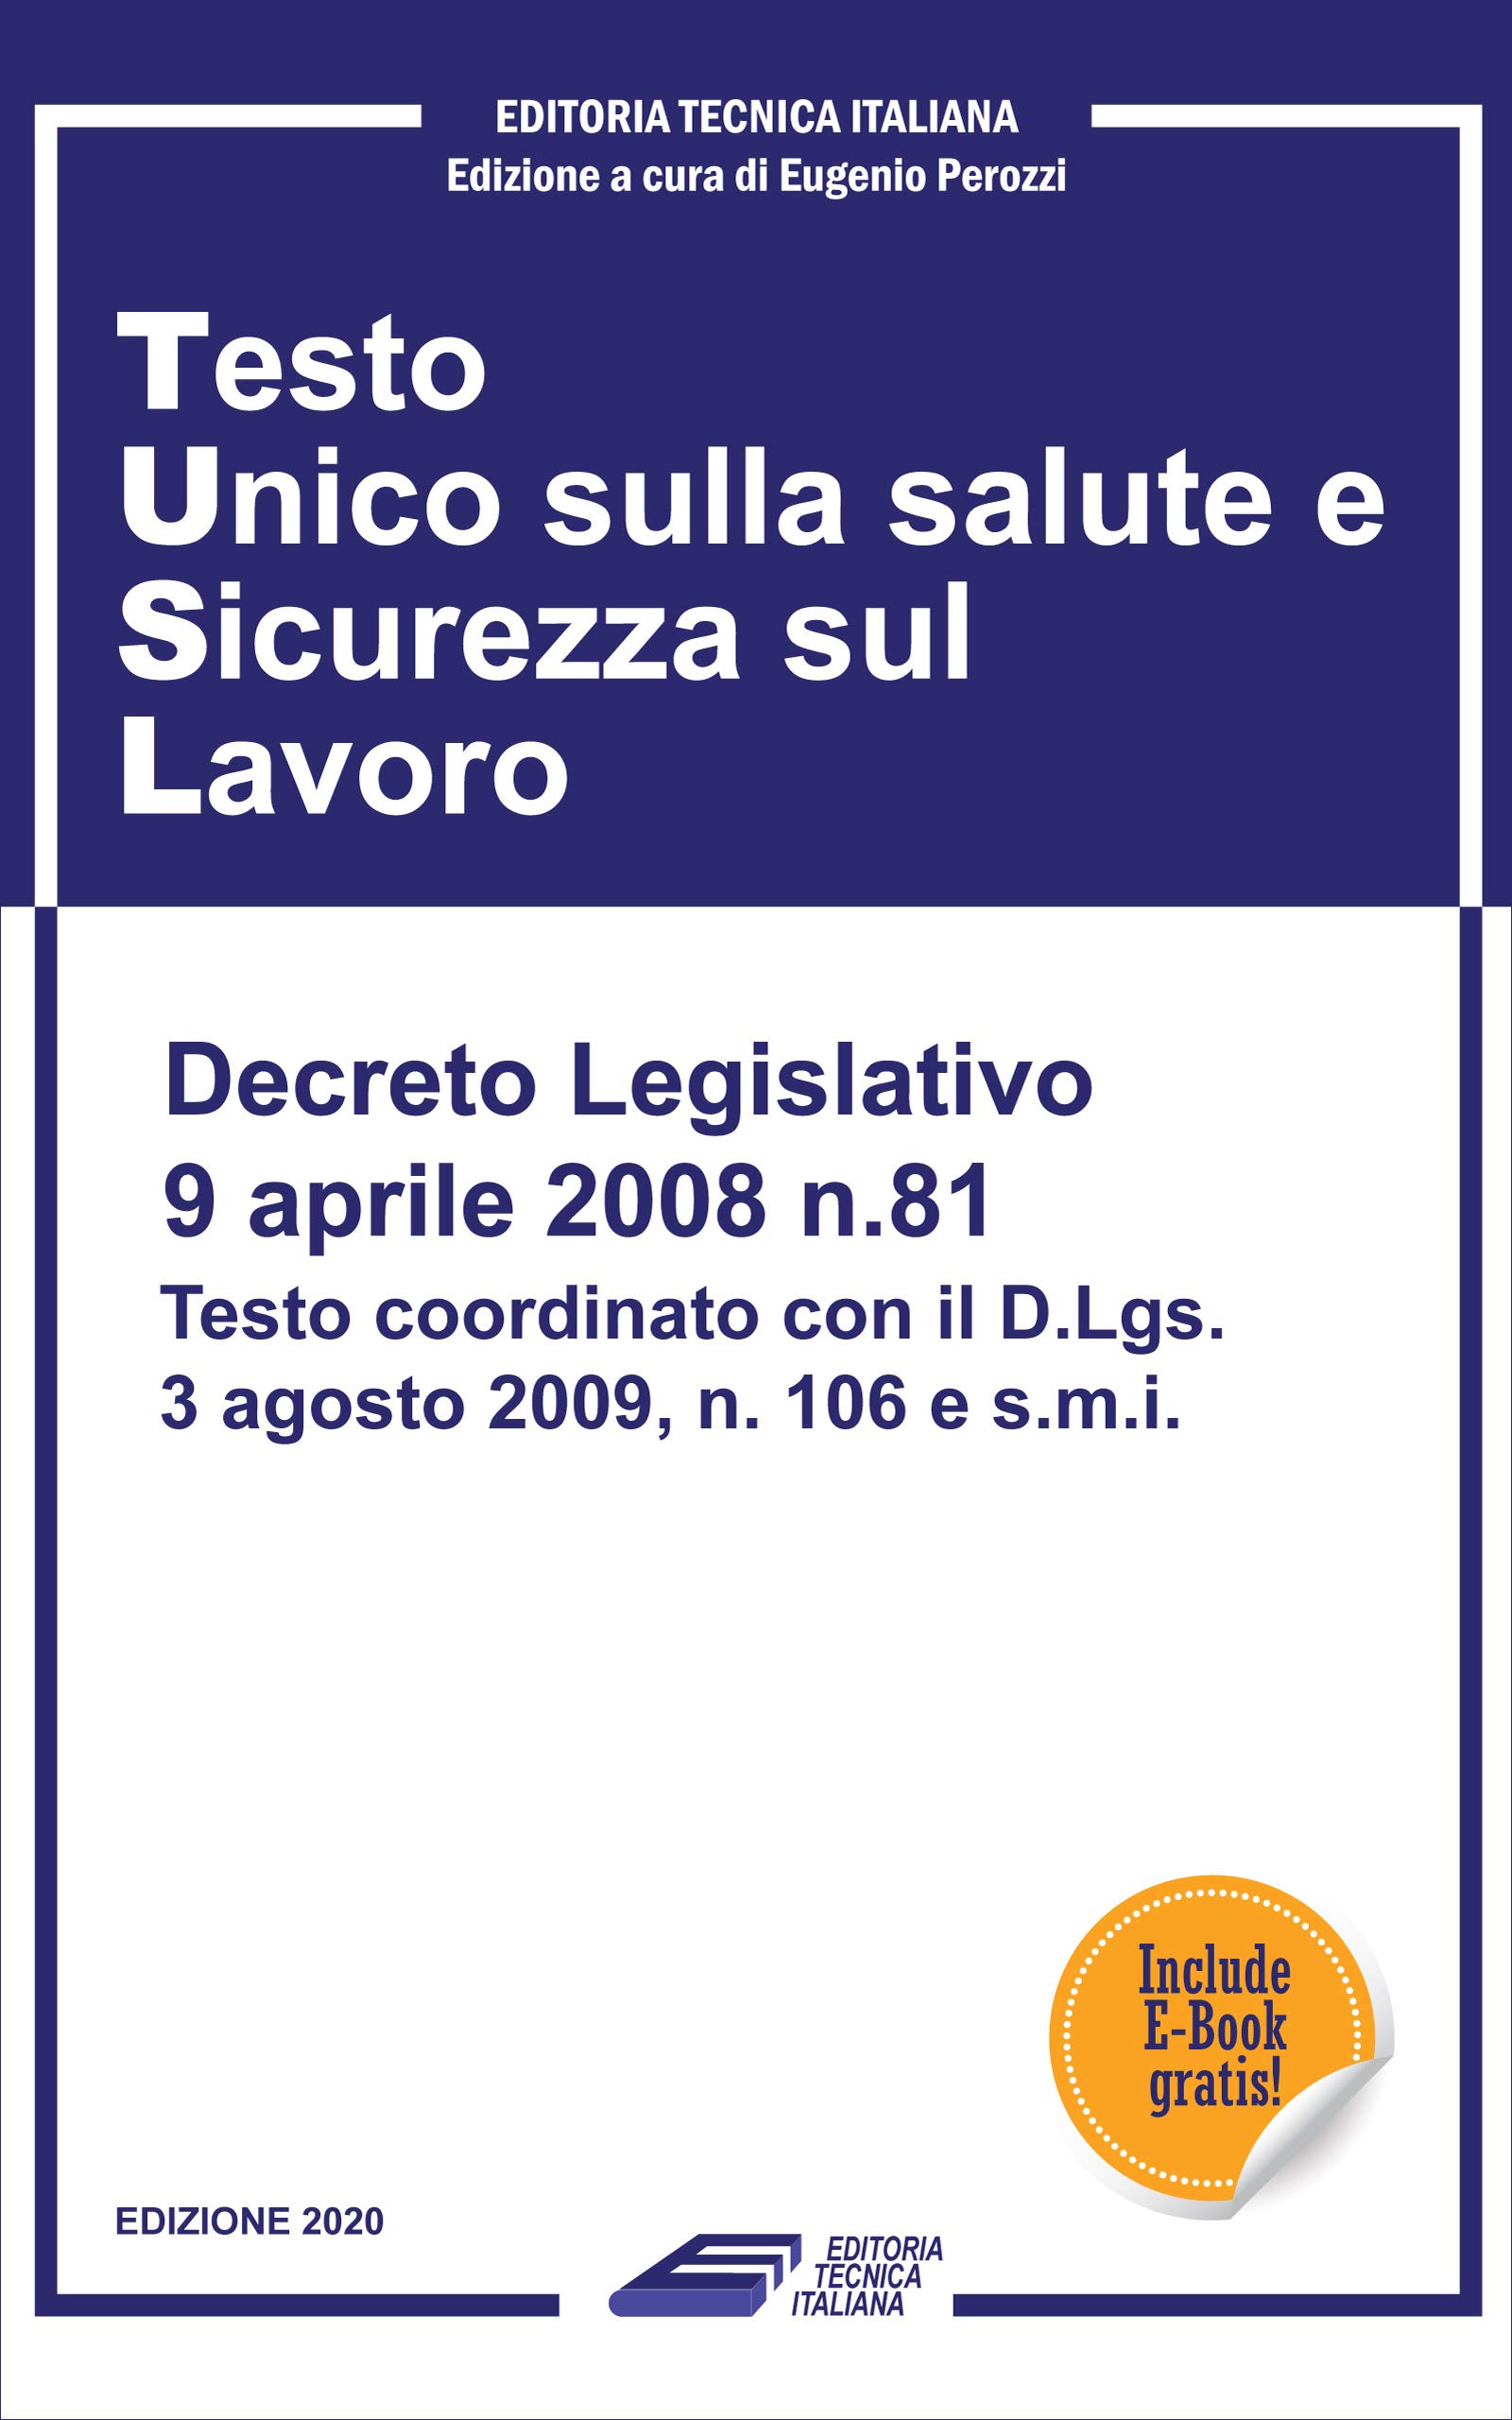 Testo Unico Sicurezza sul Lavoro: D.Lgs. 81/2008 TUSL - Testo aggiornato 2020 completo di allegati con indice dettagliato per articoli (Italian Edition)